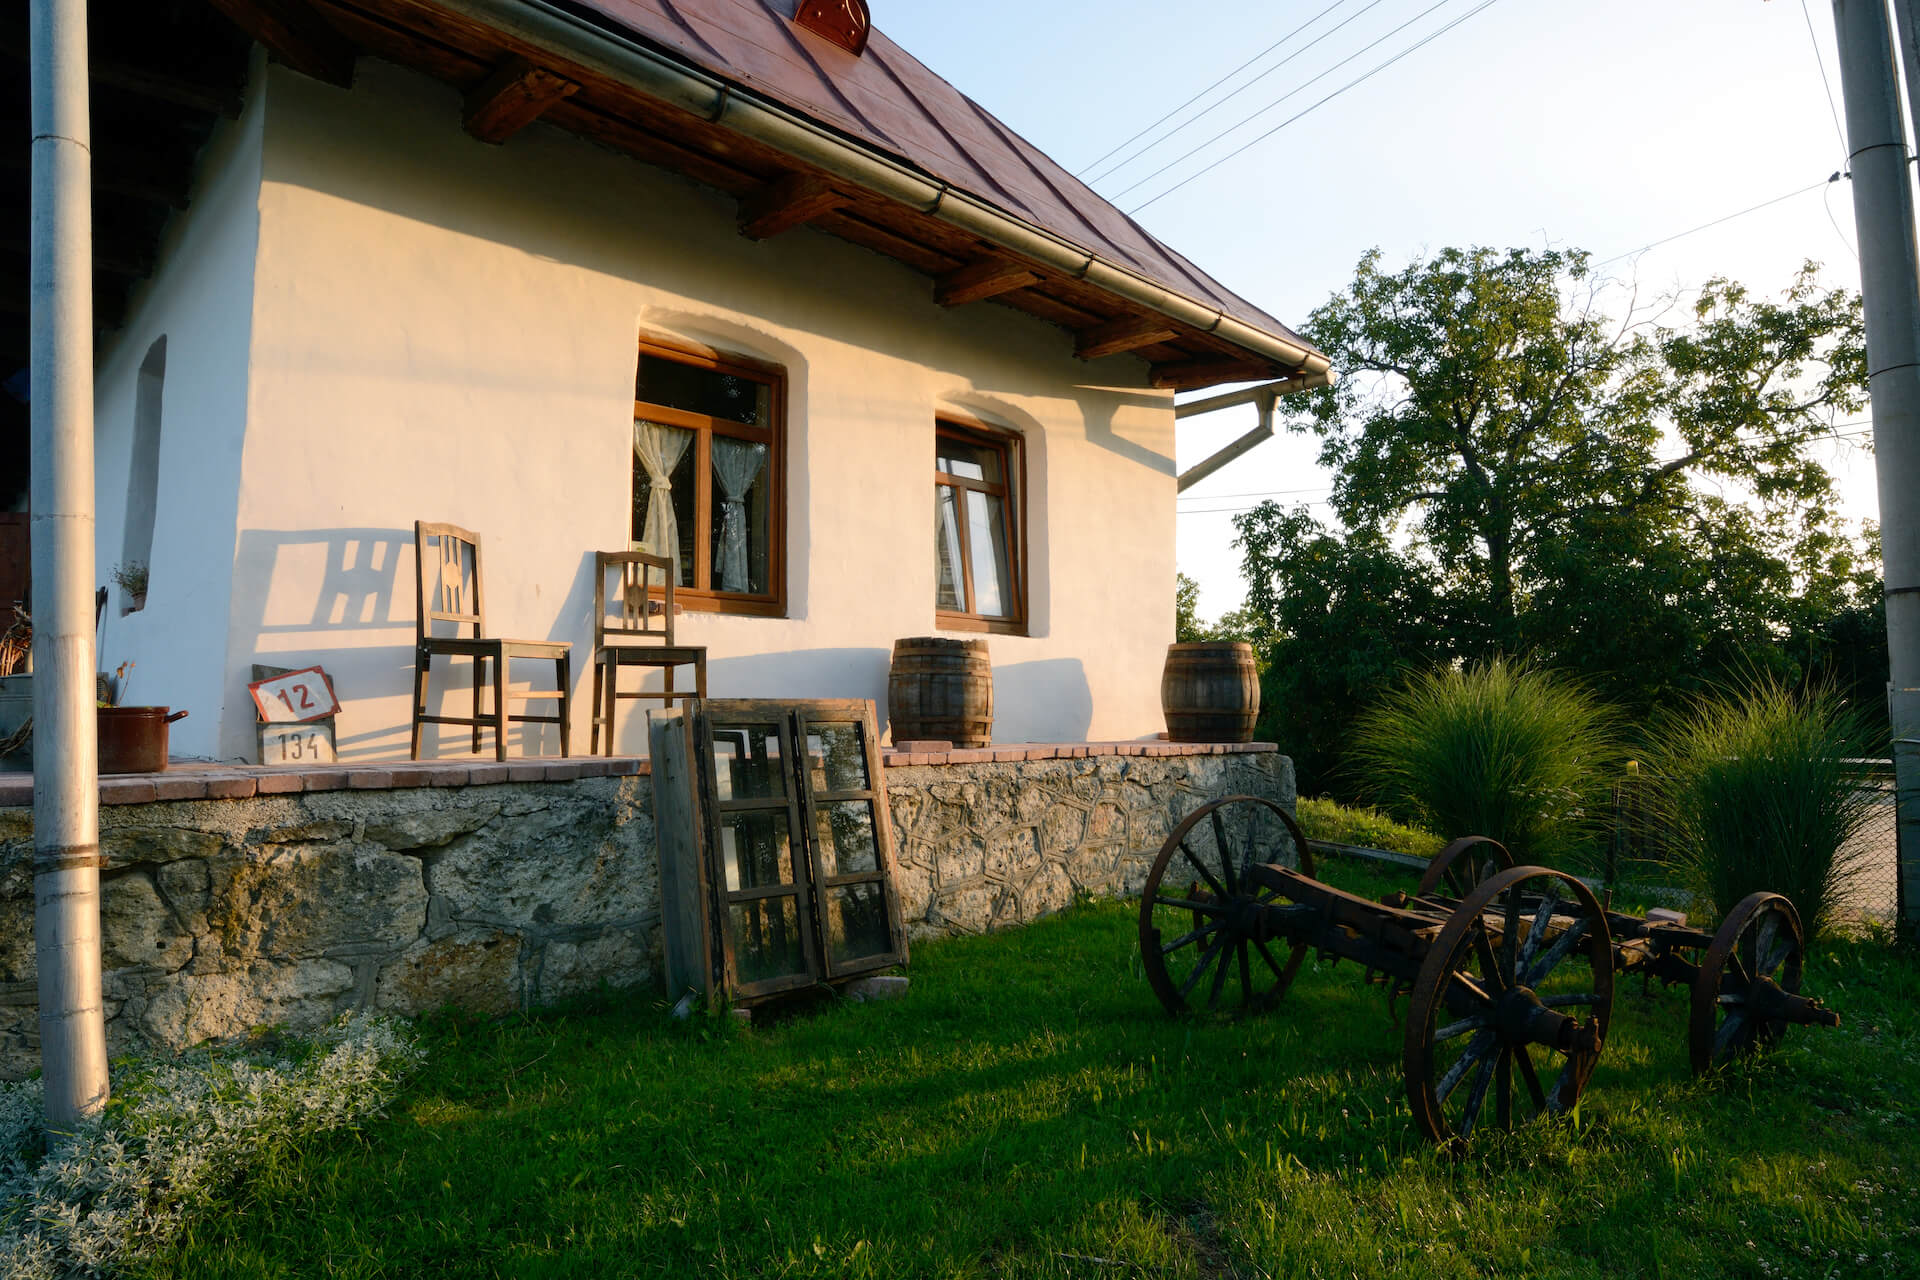 Ponúkame ubytovanie v nádhernom prostredí Vinohradníckej oblasti Tokaj na Slovensku. Požičovňu bicyklov hneď pri ubytovaní, a kvalitné víno vlastnej výroby.